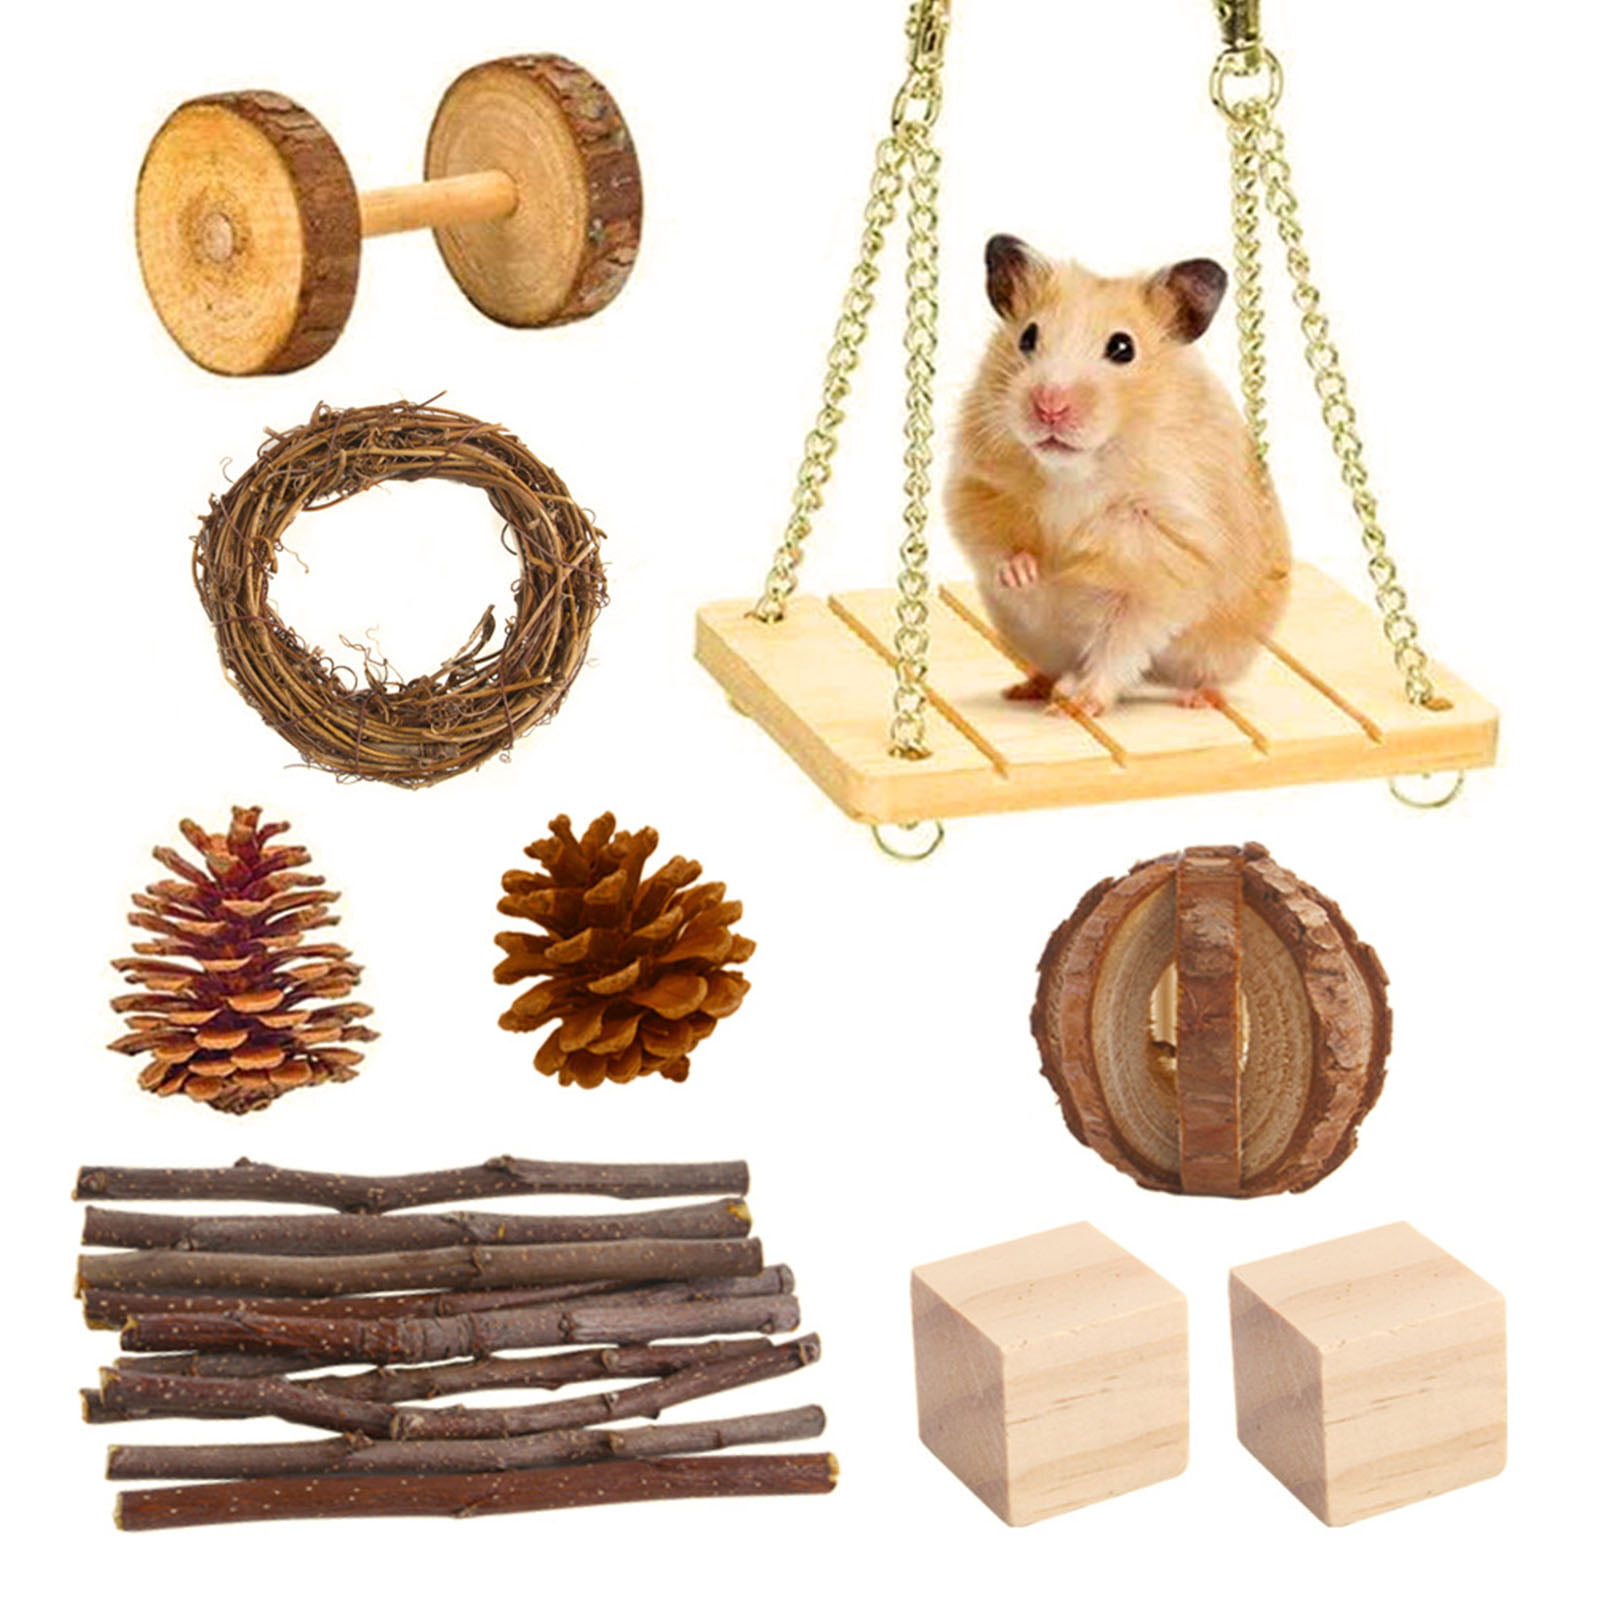 Pet Rabbit Guinea Pig Rat Pine Wood Rattan Vine Chew Wooden Block & Balls Toy 